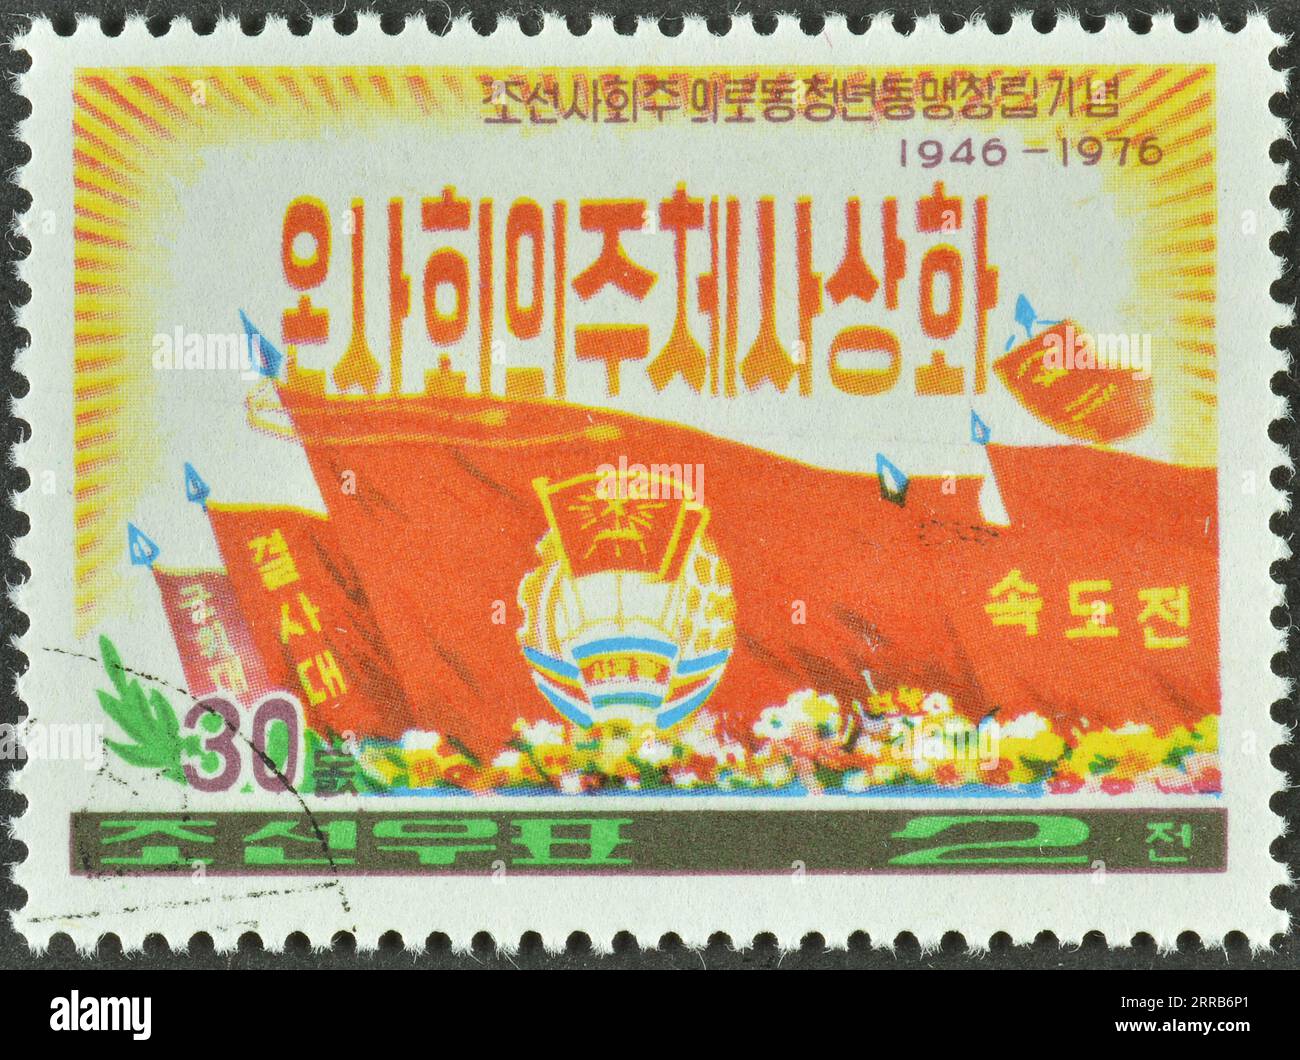 Timbre-poste annulé imprimé par la Corée du Nord, qui montre les armoiries et le drapeau, le 30e anniversaire de la jeunesse ouvrière socialiste, vers 1976. Banque D'Images